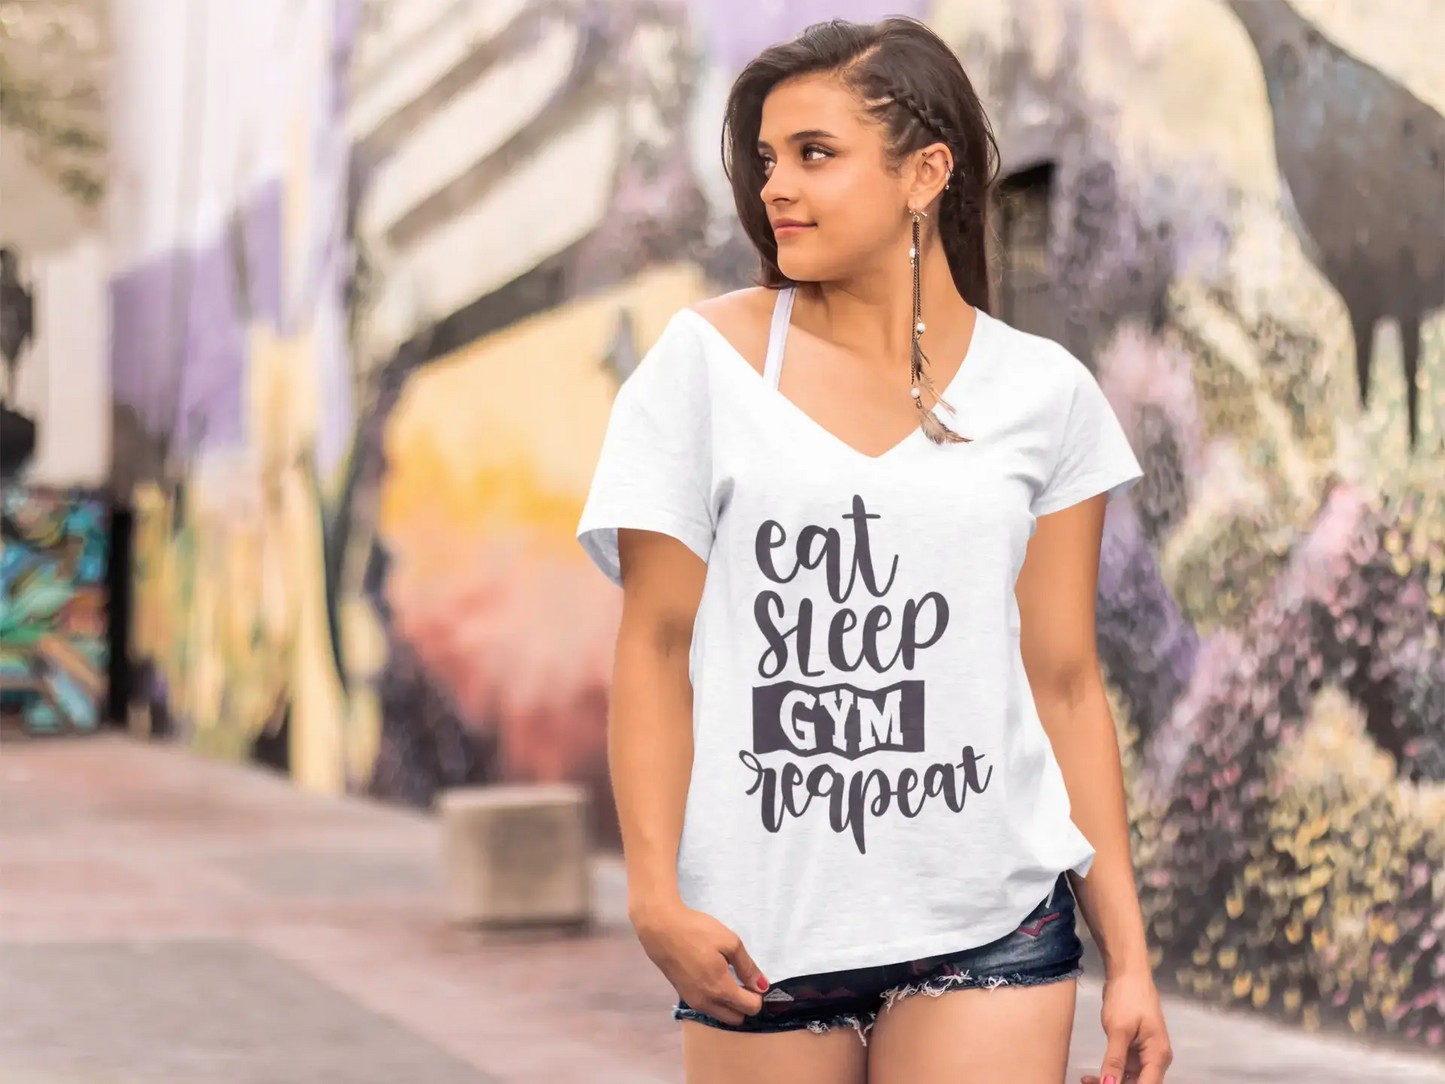 ULTRABASIC T-shirt fantaisie pour femme Eat Sleep Gym Repeat – T-shirt drôle de gym